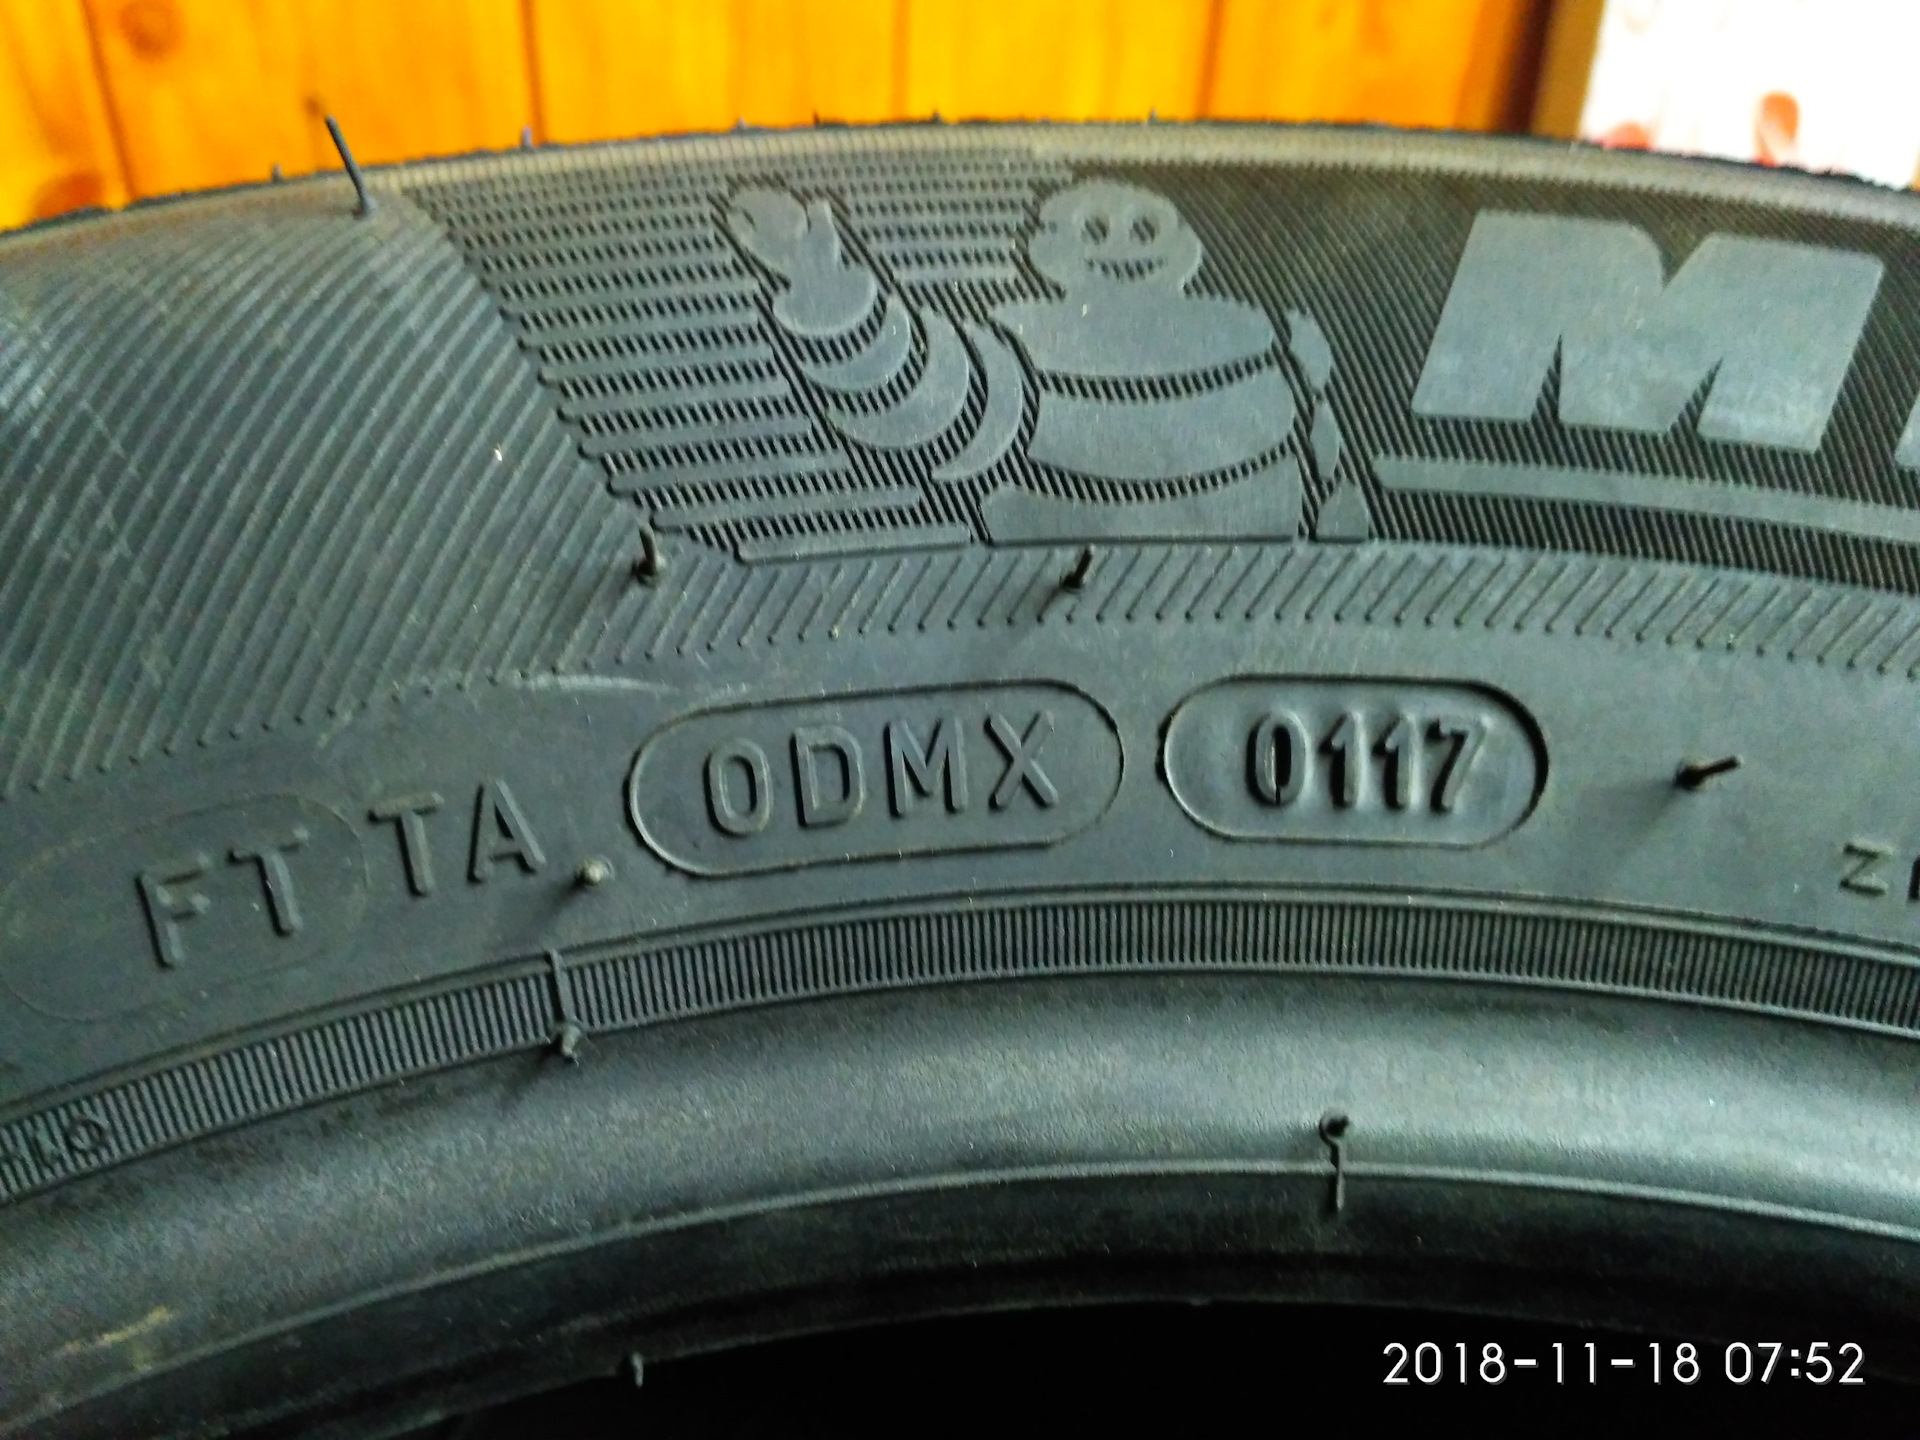 Как узнать дату выпуска шины. Шины Мишлен Дата изготовления шин. Маркировка даты производства на шинах Мишлен. Дата производства шины Michelin. Дата выпуска резины Мишлен.